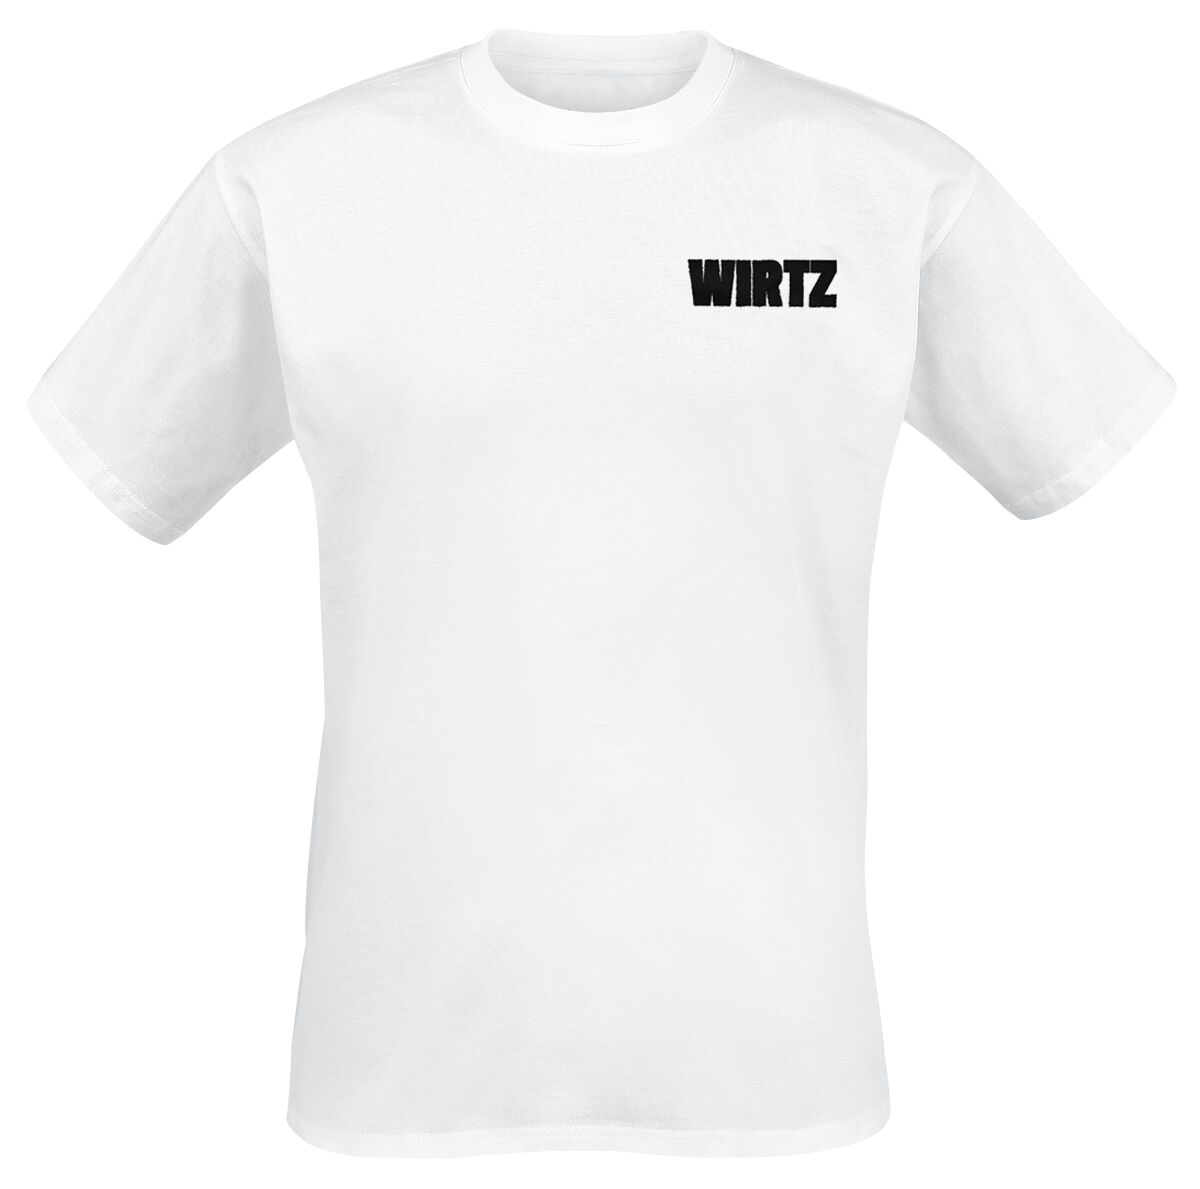 Wirtz T-Shirt - DNA - S bis XL - für Männer - Größe S - weiß  - Lizenziertes Merchandise!